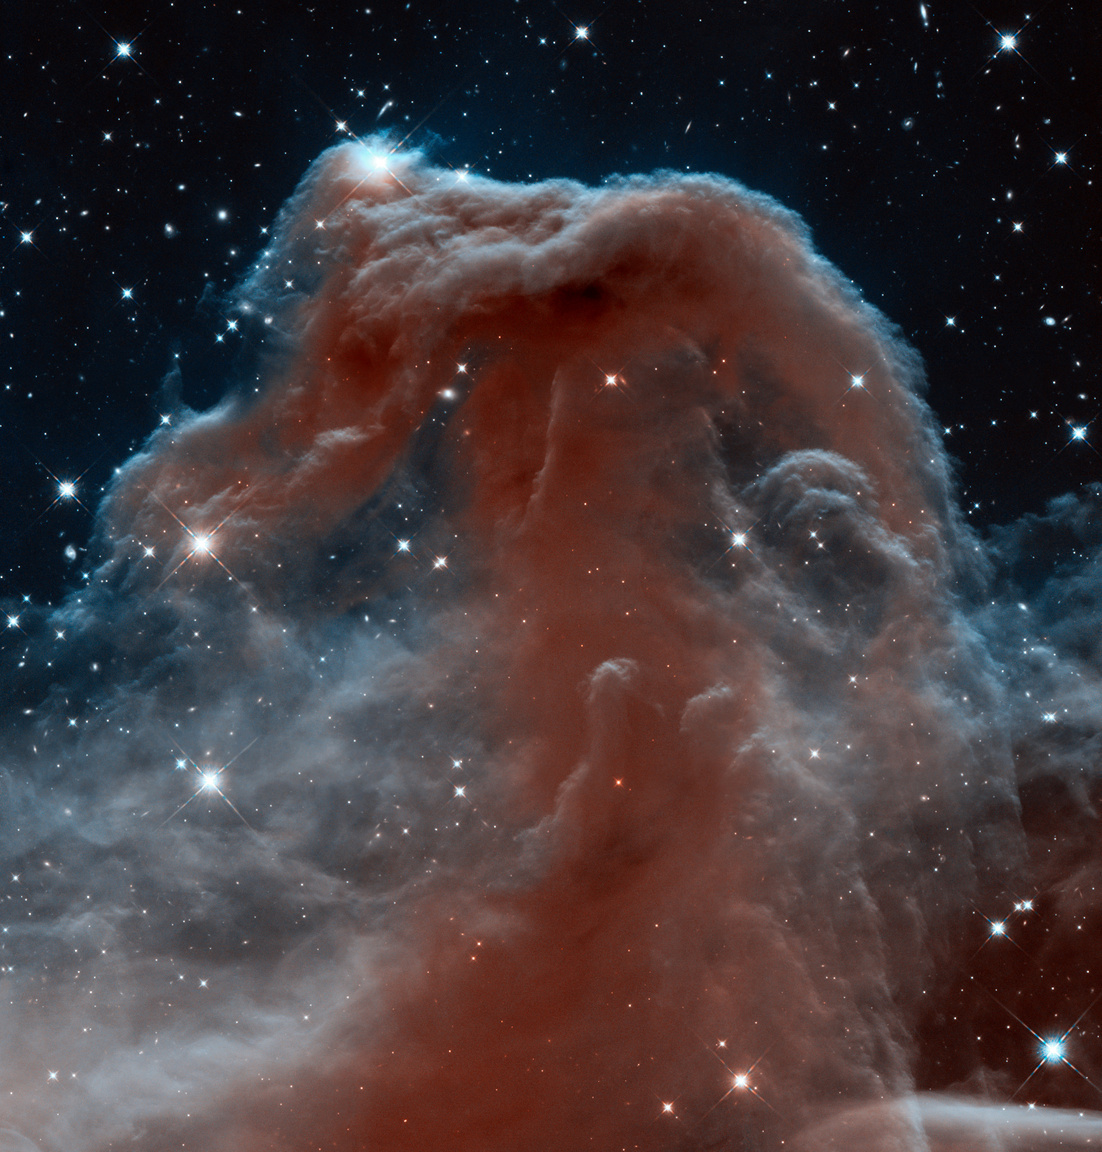 Egy pillanatok alatt ikonikussá vált fotó a nevezetes Lófej-ködről. A Hubble 2013-ban fényképezte le az addig soha ilyen részletesen nem látott híres por- és gázfelhőt (más néven Barnard 33) az Orion csillagképben. Az infravörös tartományban készült felvétel segítségével a csillagászok behatóan tanulmányozhatták a csillagközi felhő addig rejtett struktúráját.